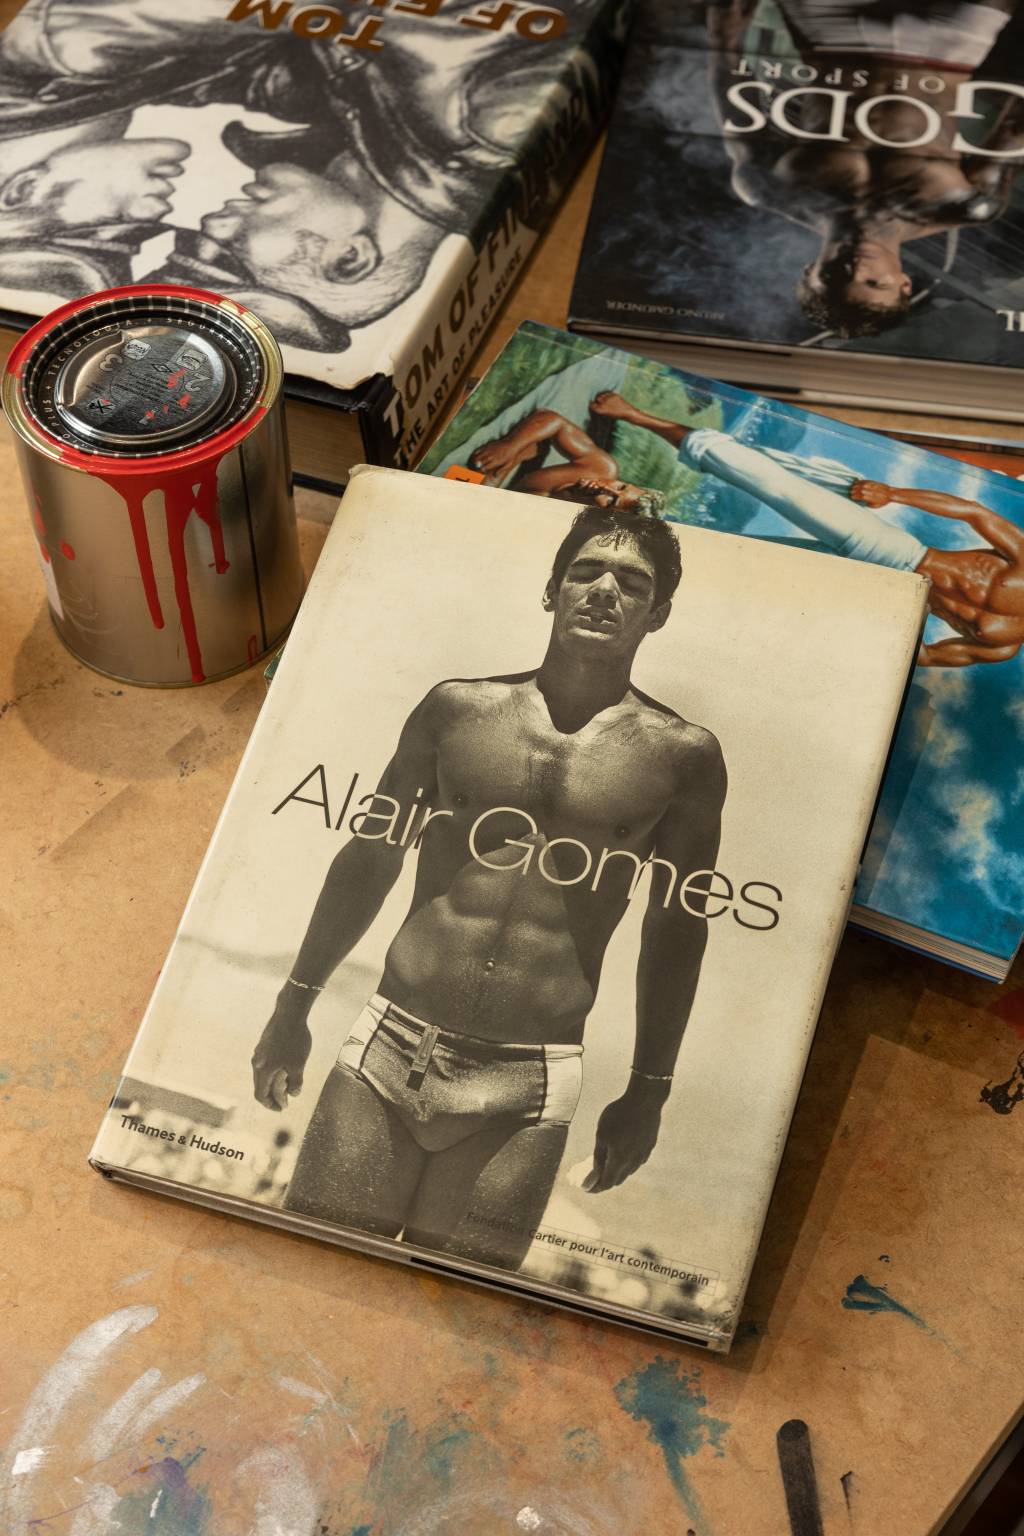 Capa do livro Alair Gomes com latas de tinta ao redor.